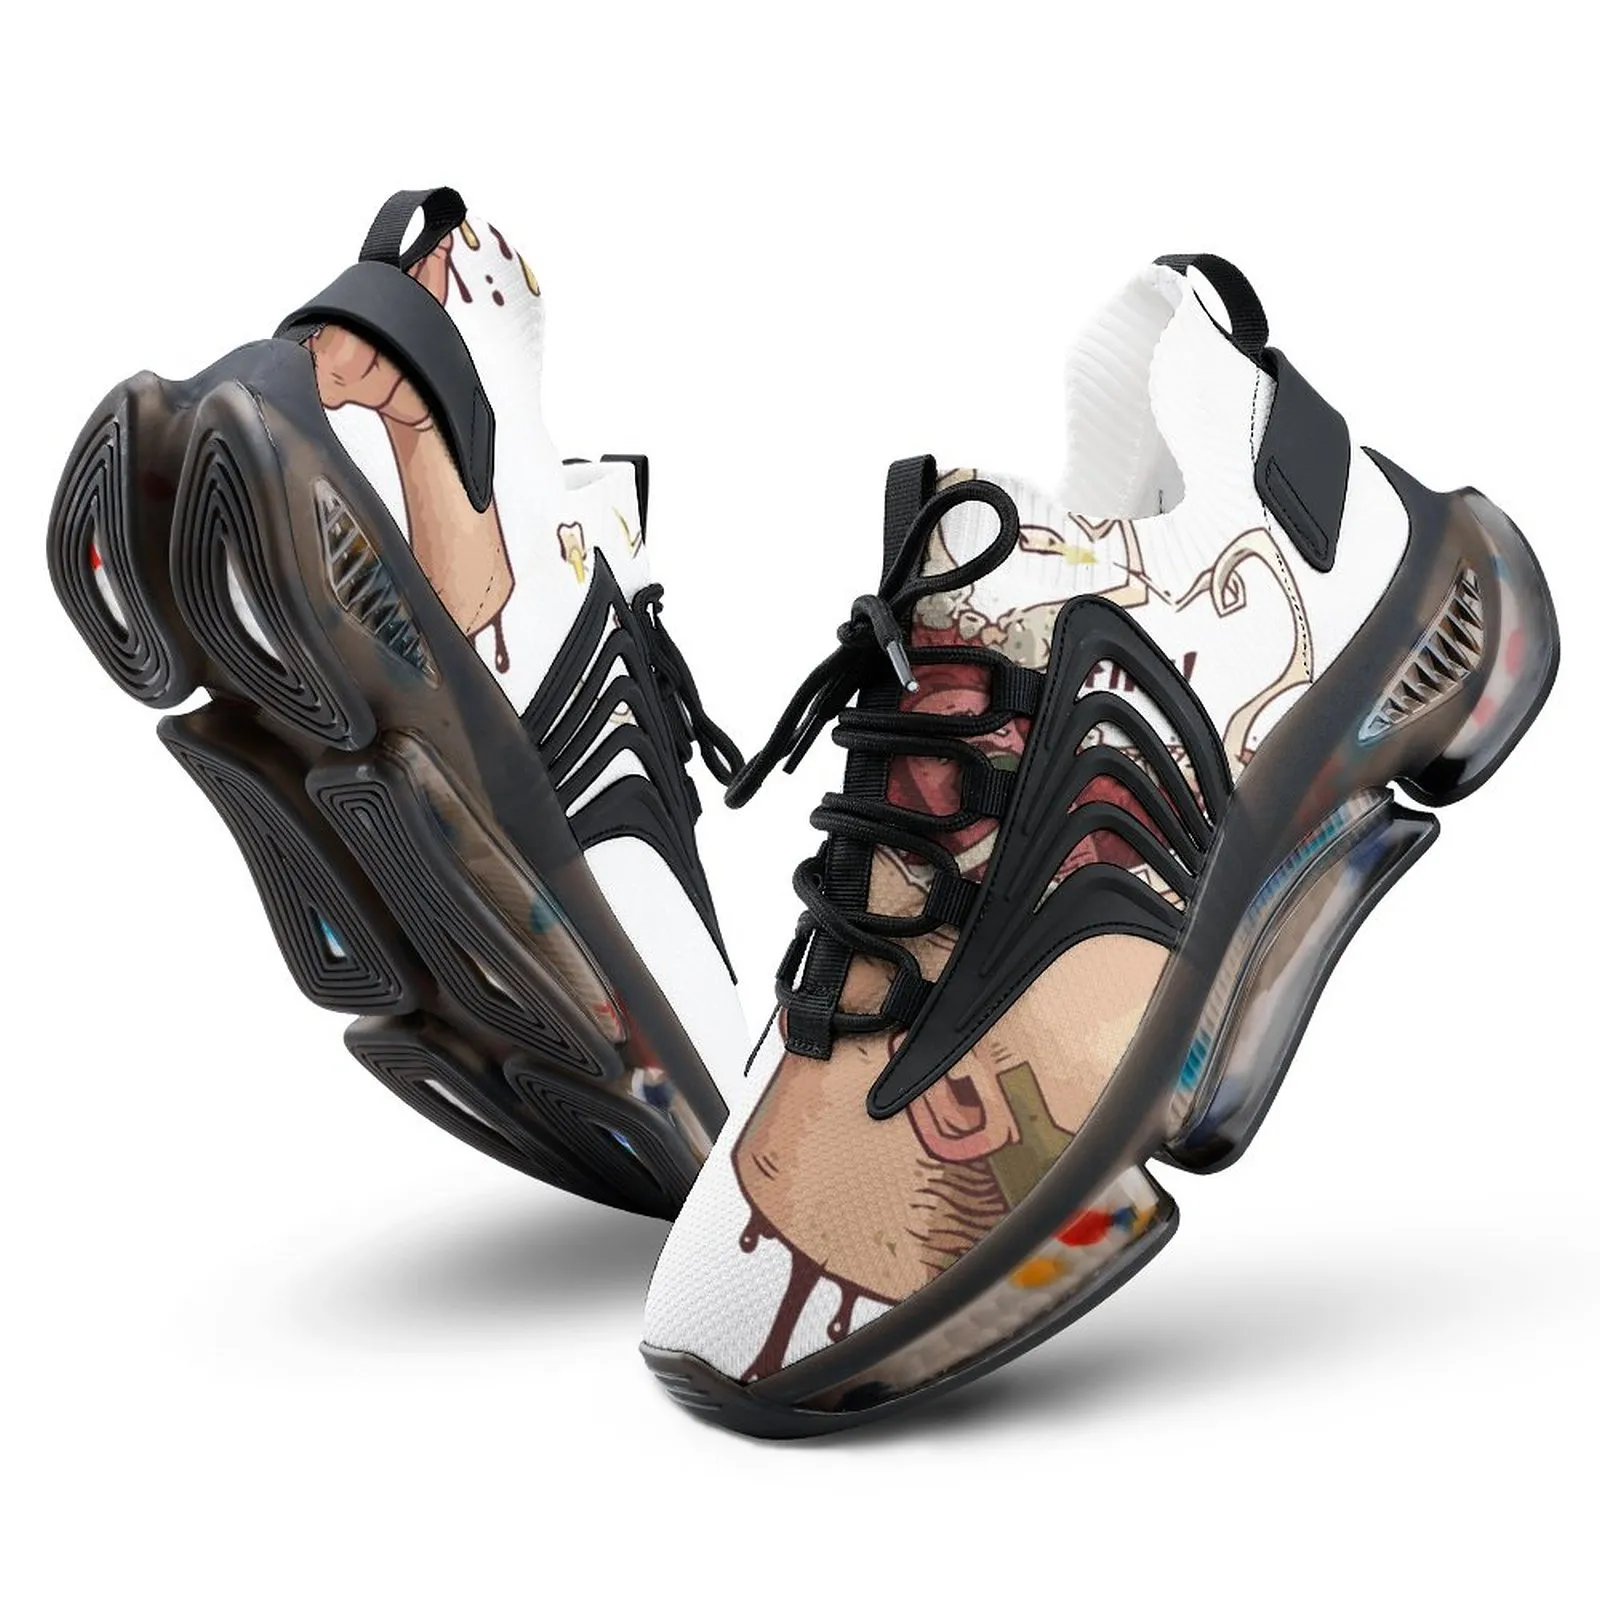 Özel Erkek Spor Ayakkabıları Elastik Rahat Koşu Sinek Dokuma Işık Nefes Beklenebilir